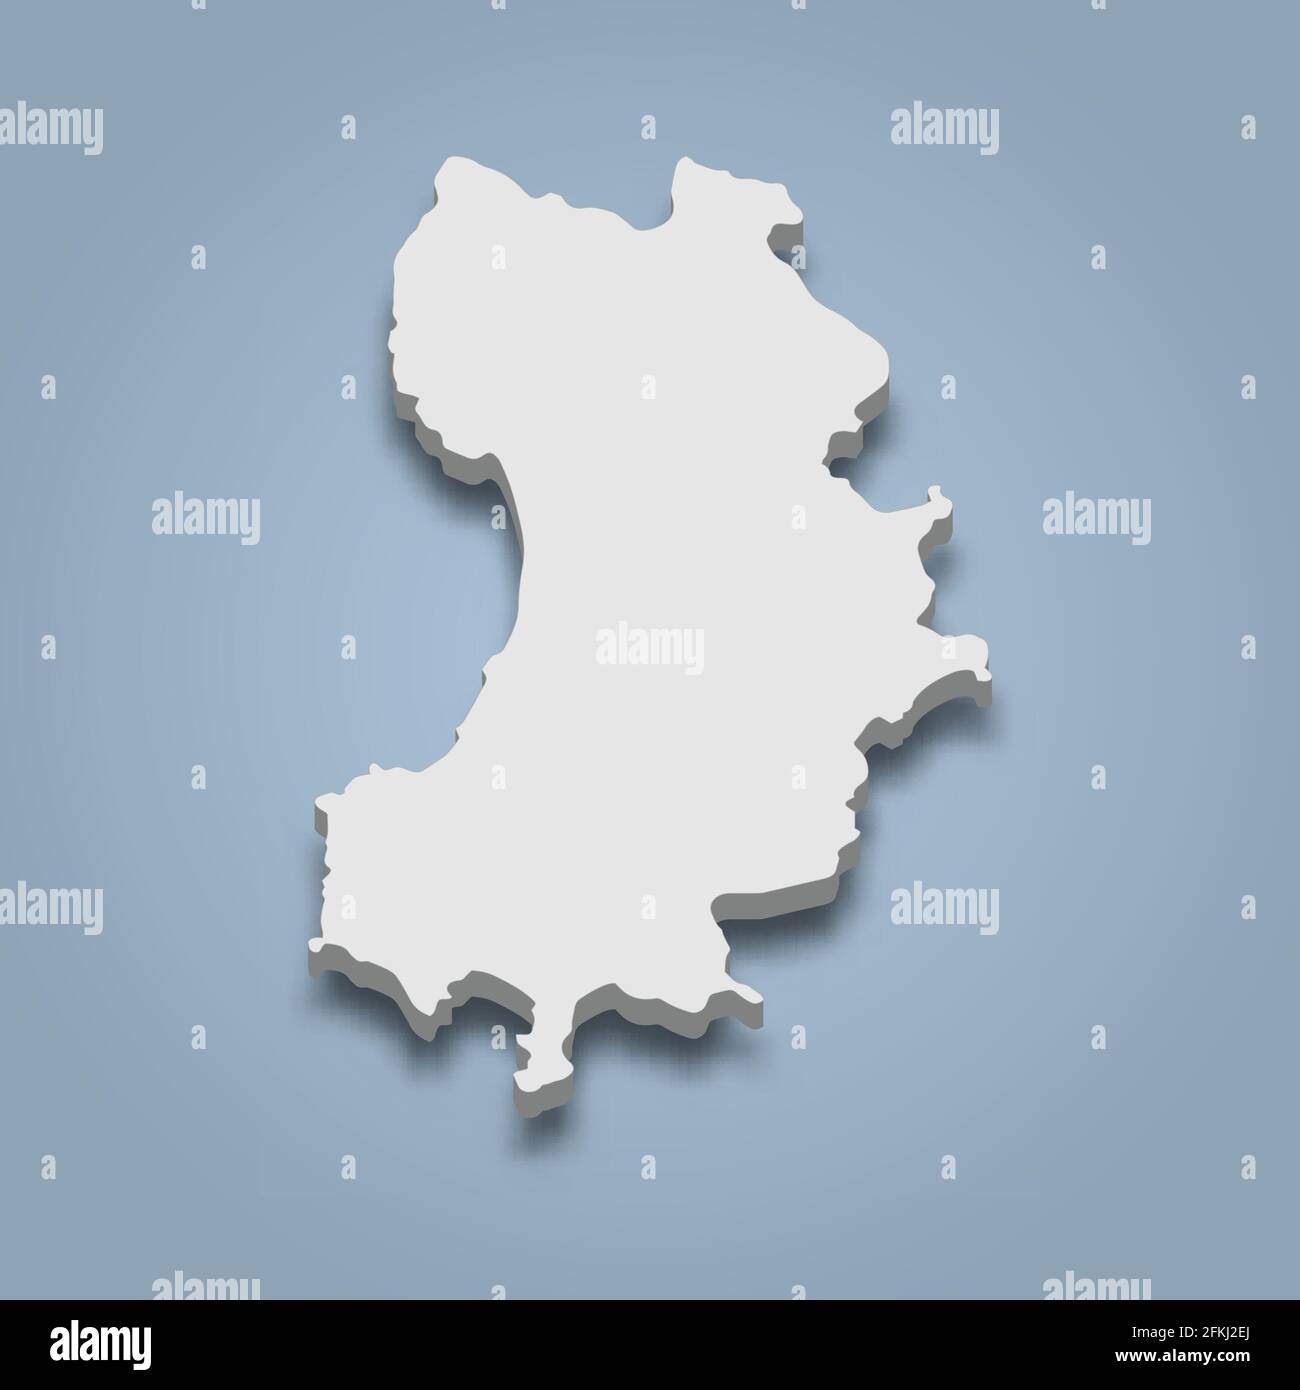 La mappa isometrica 3d di Ko Tao è un'isola della Thailandia, con un'illustrazione vettoriale isolata Illustrazione Vettoriale